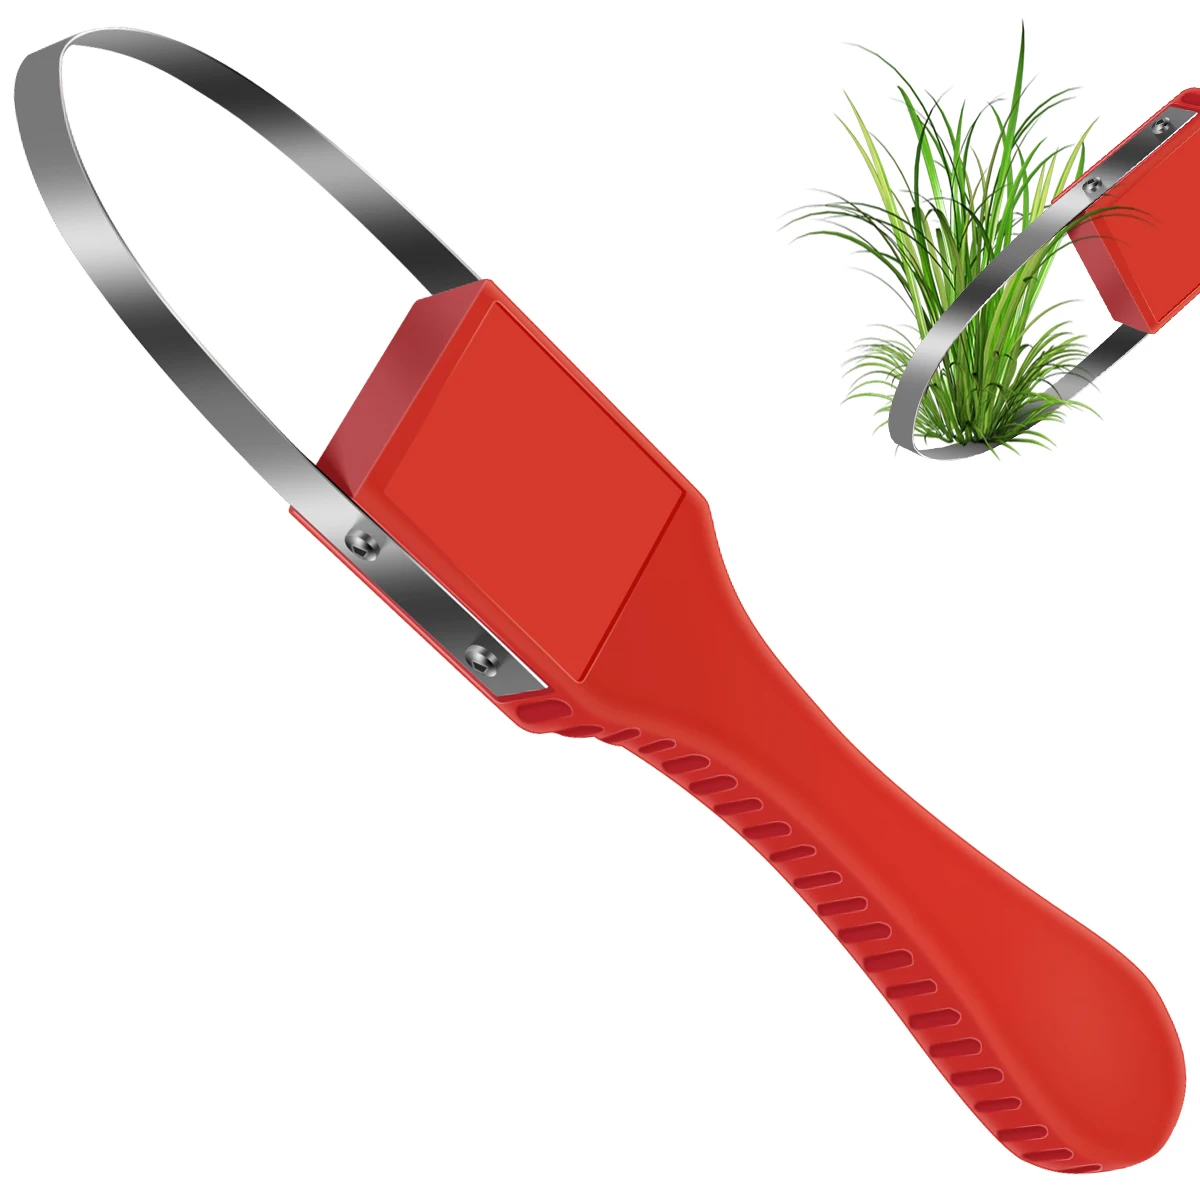 

Red Hand Loop Weeder Tool Manual Weeder with Sharp Metal Blade Gardening Weeding Tools for Weeding Loosening